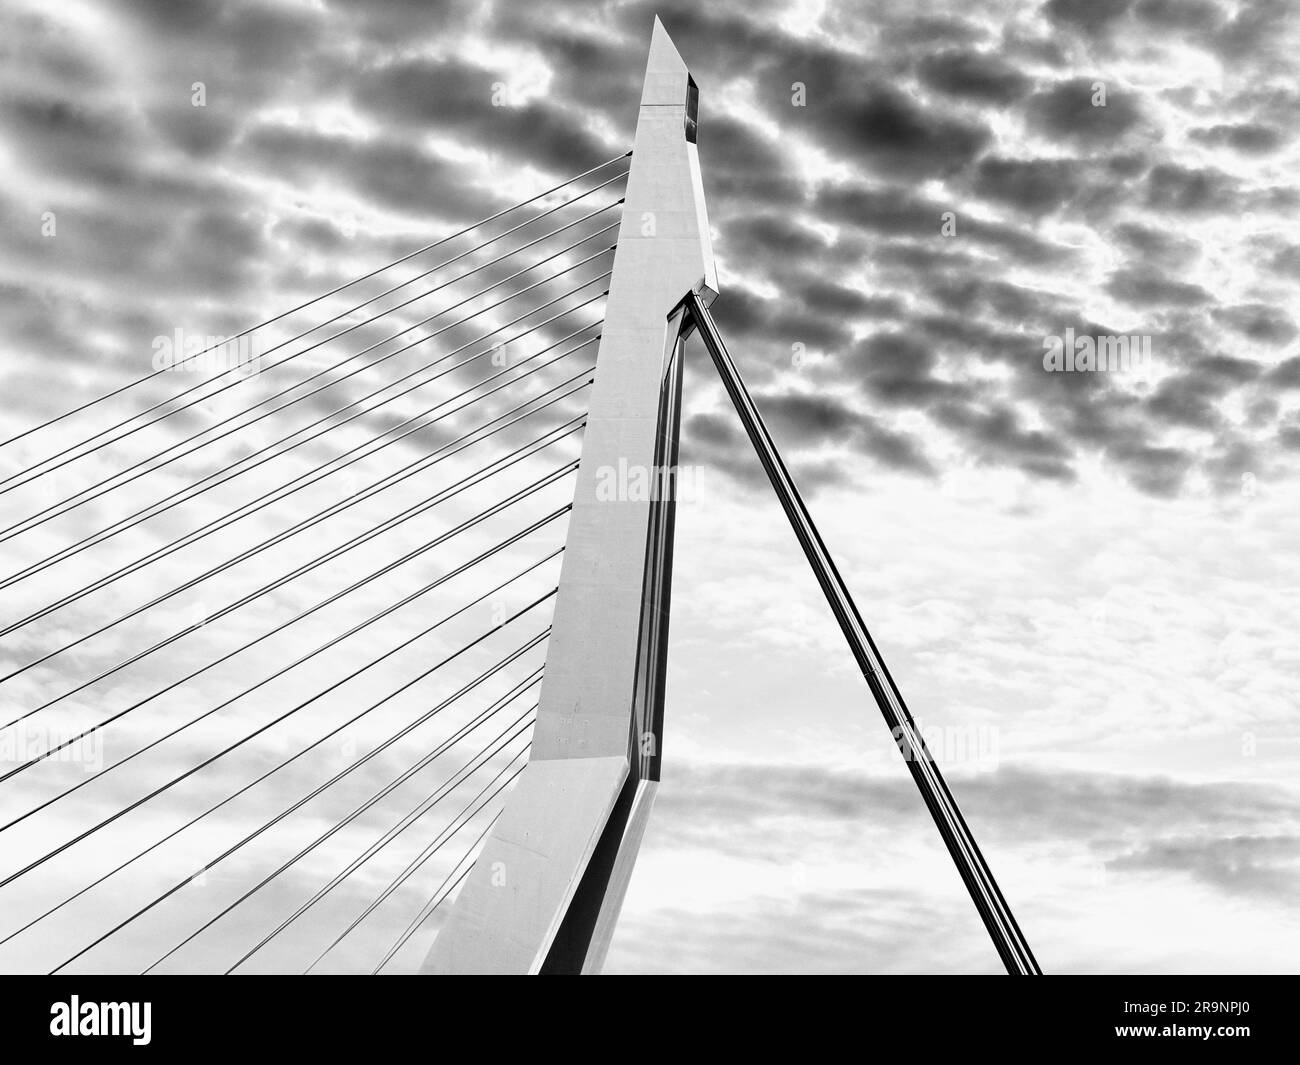 Nommé d'après le grand philosophe et humaniste hollandais de la  renaissance, le magnifique nouveau pont suspendu de Rotterdam ajoute  considérablement à la ville Photo Stock - Alamy